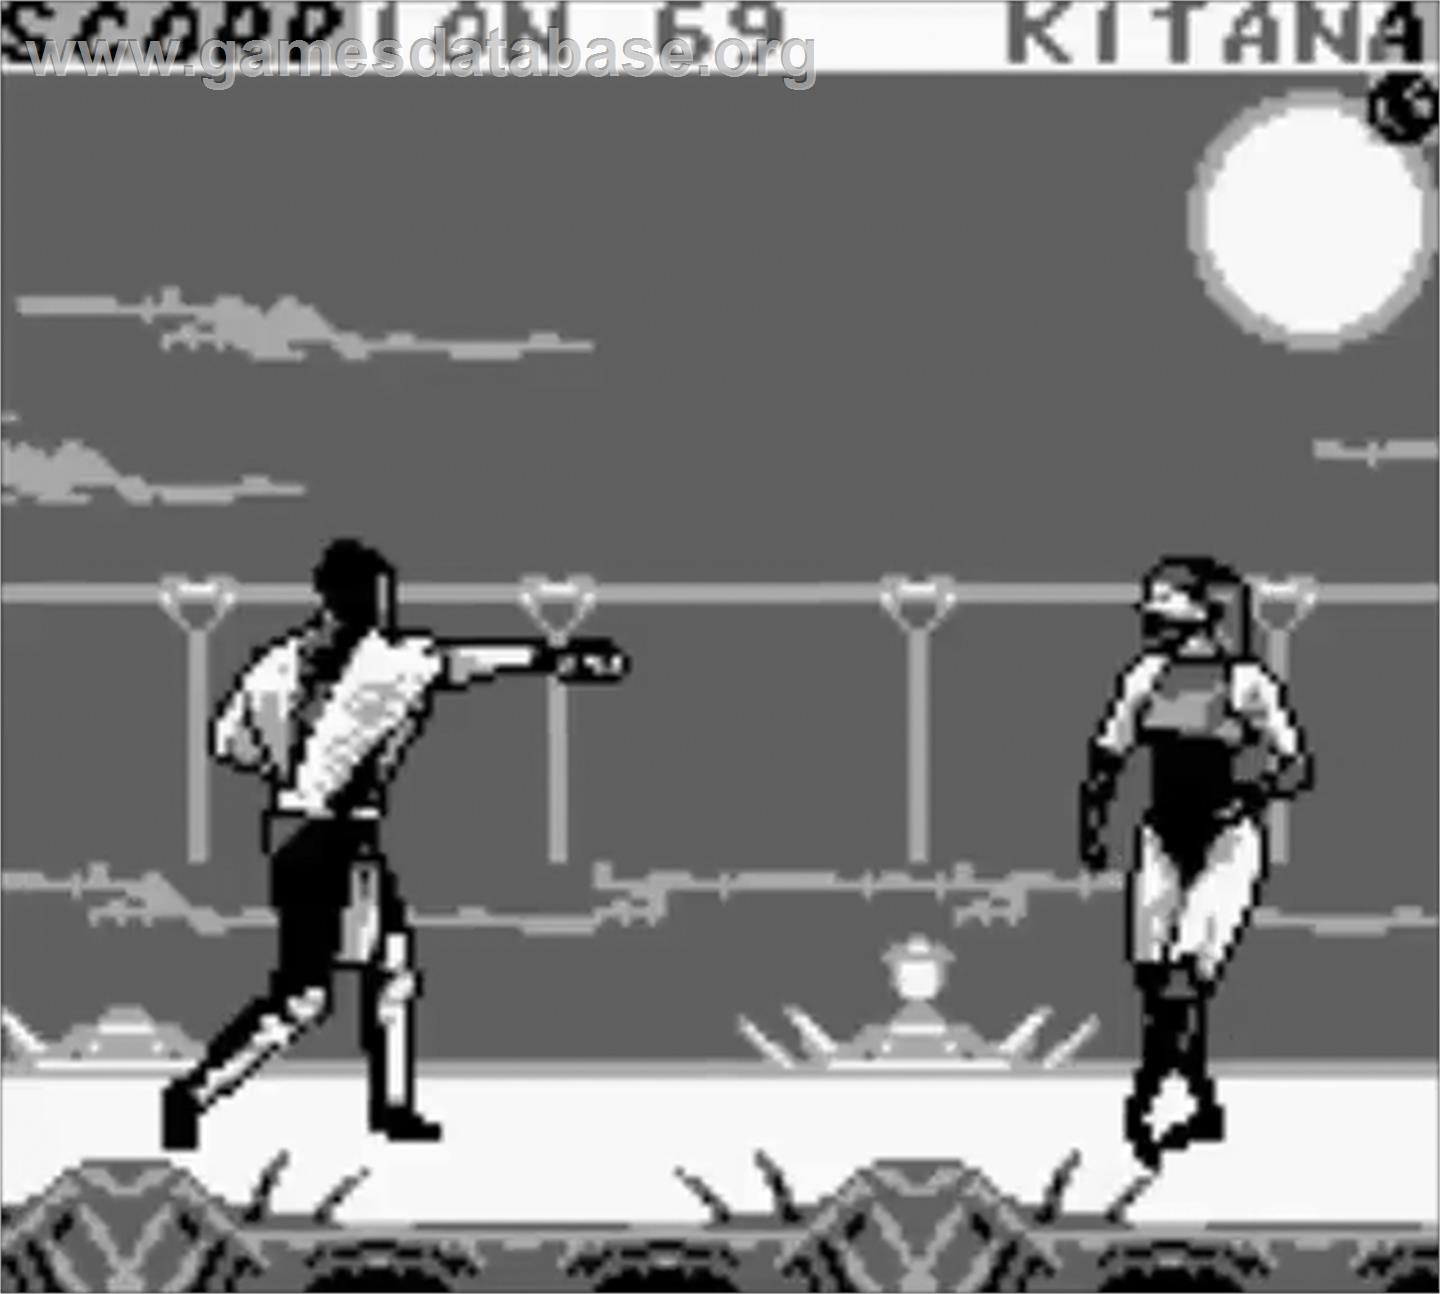 Mortal Kombat II - Nintendo Game Boy - Artwork - In Game